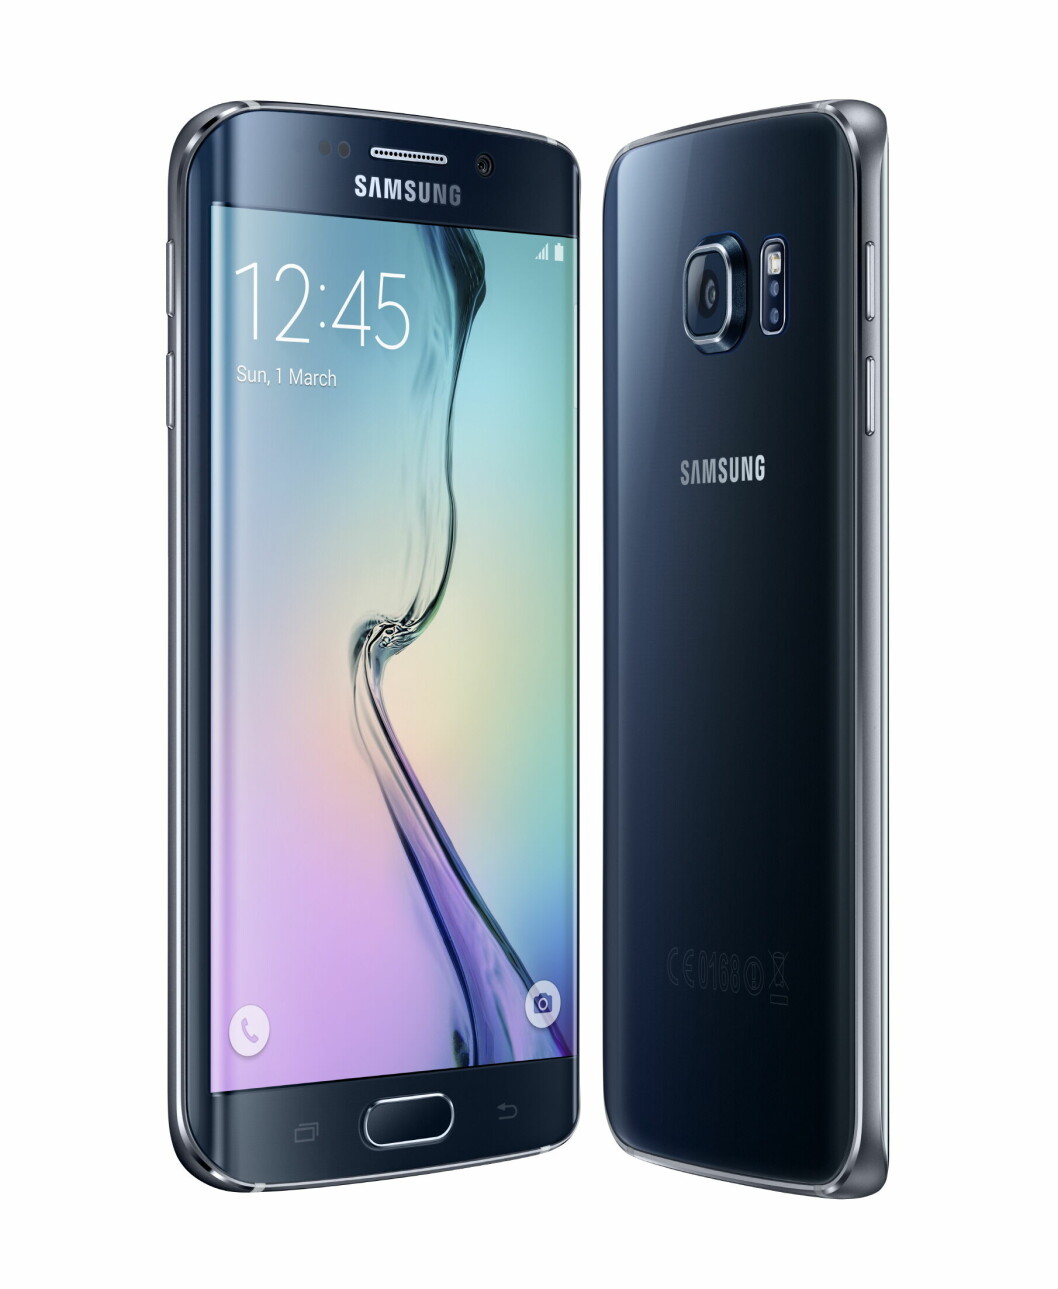 MWC: Samsung Galaxy S6 Edge vant prisen for årets beste mobiltelefon, mens Iphone 6 ble en av vinnerne fra fjoråret. (Foto: Computerworld.com)